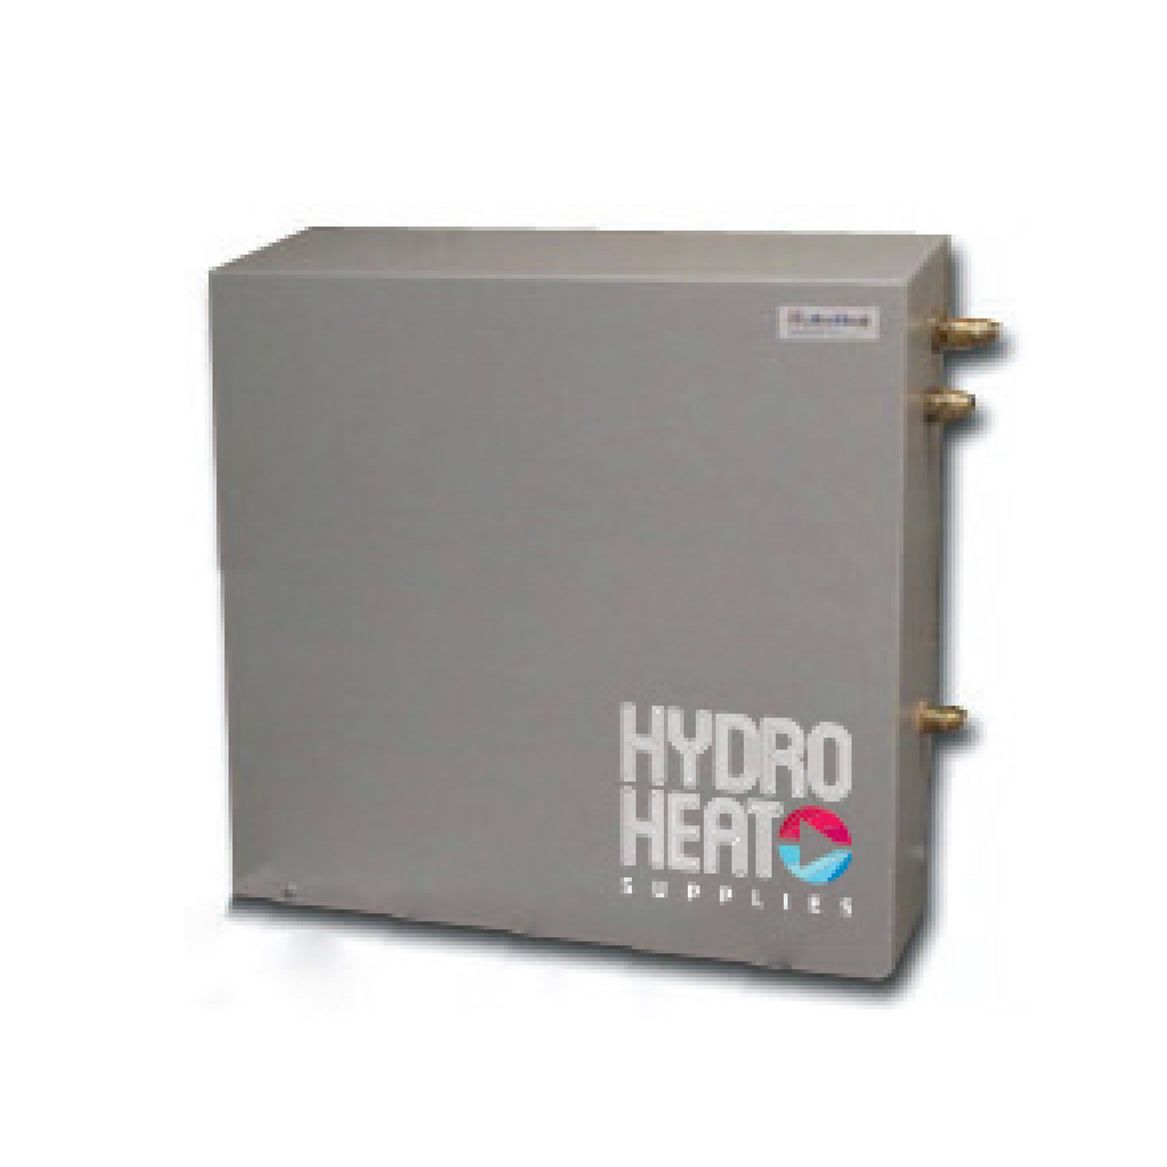 Hydrofill Automatic Pressurisation Unit